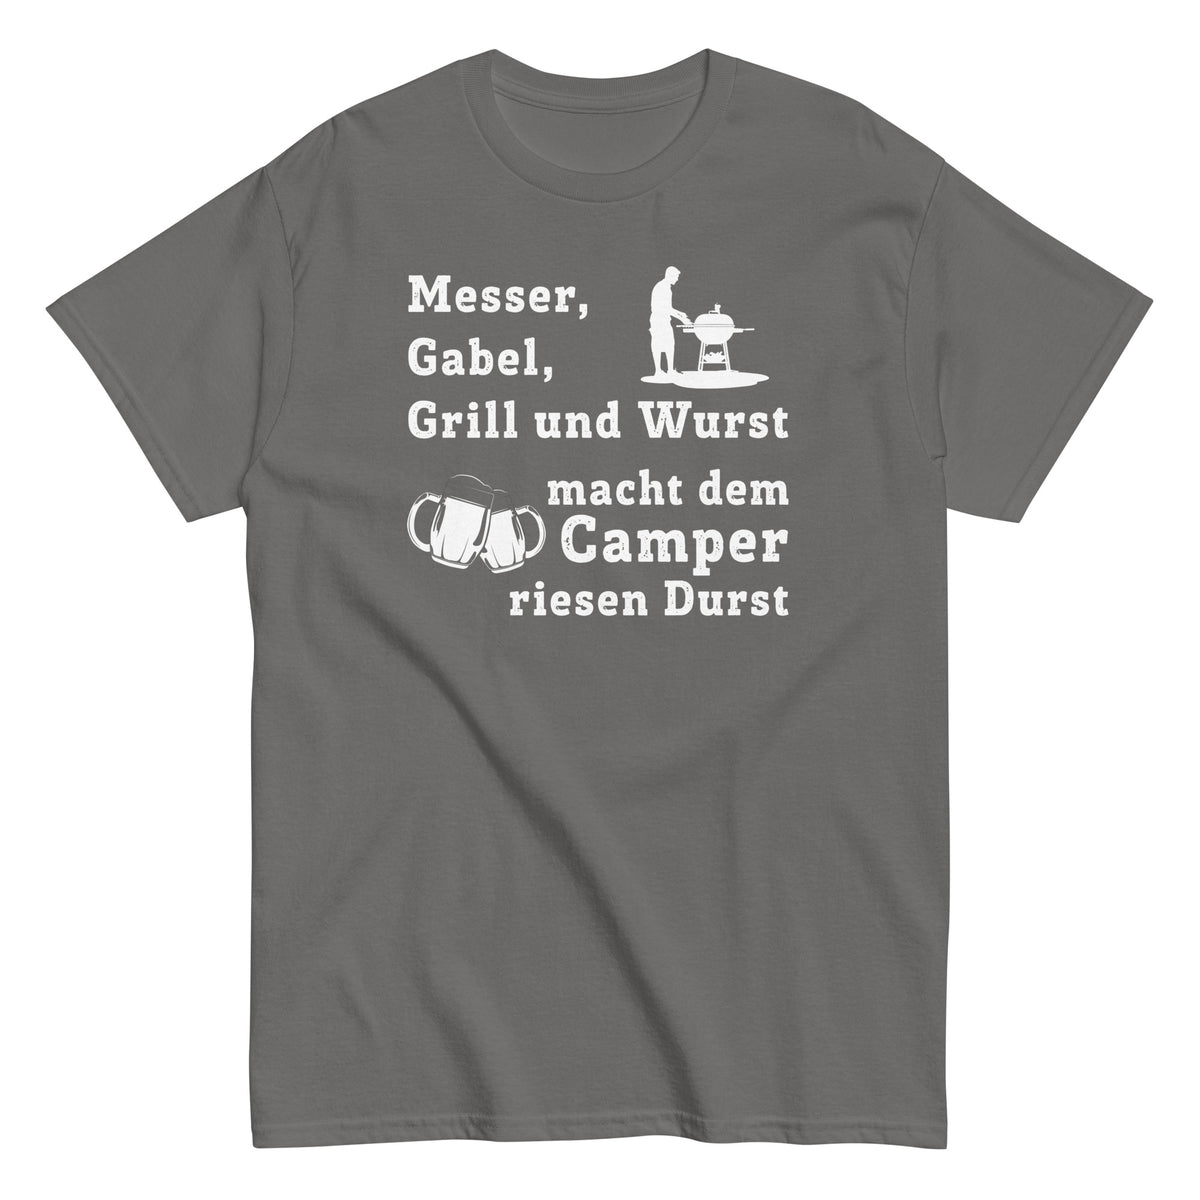 Cooles Herren Spruch Shirt "Messer, Gabel, Grill und Wurst. macht dem Camper riesen Durst"